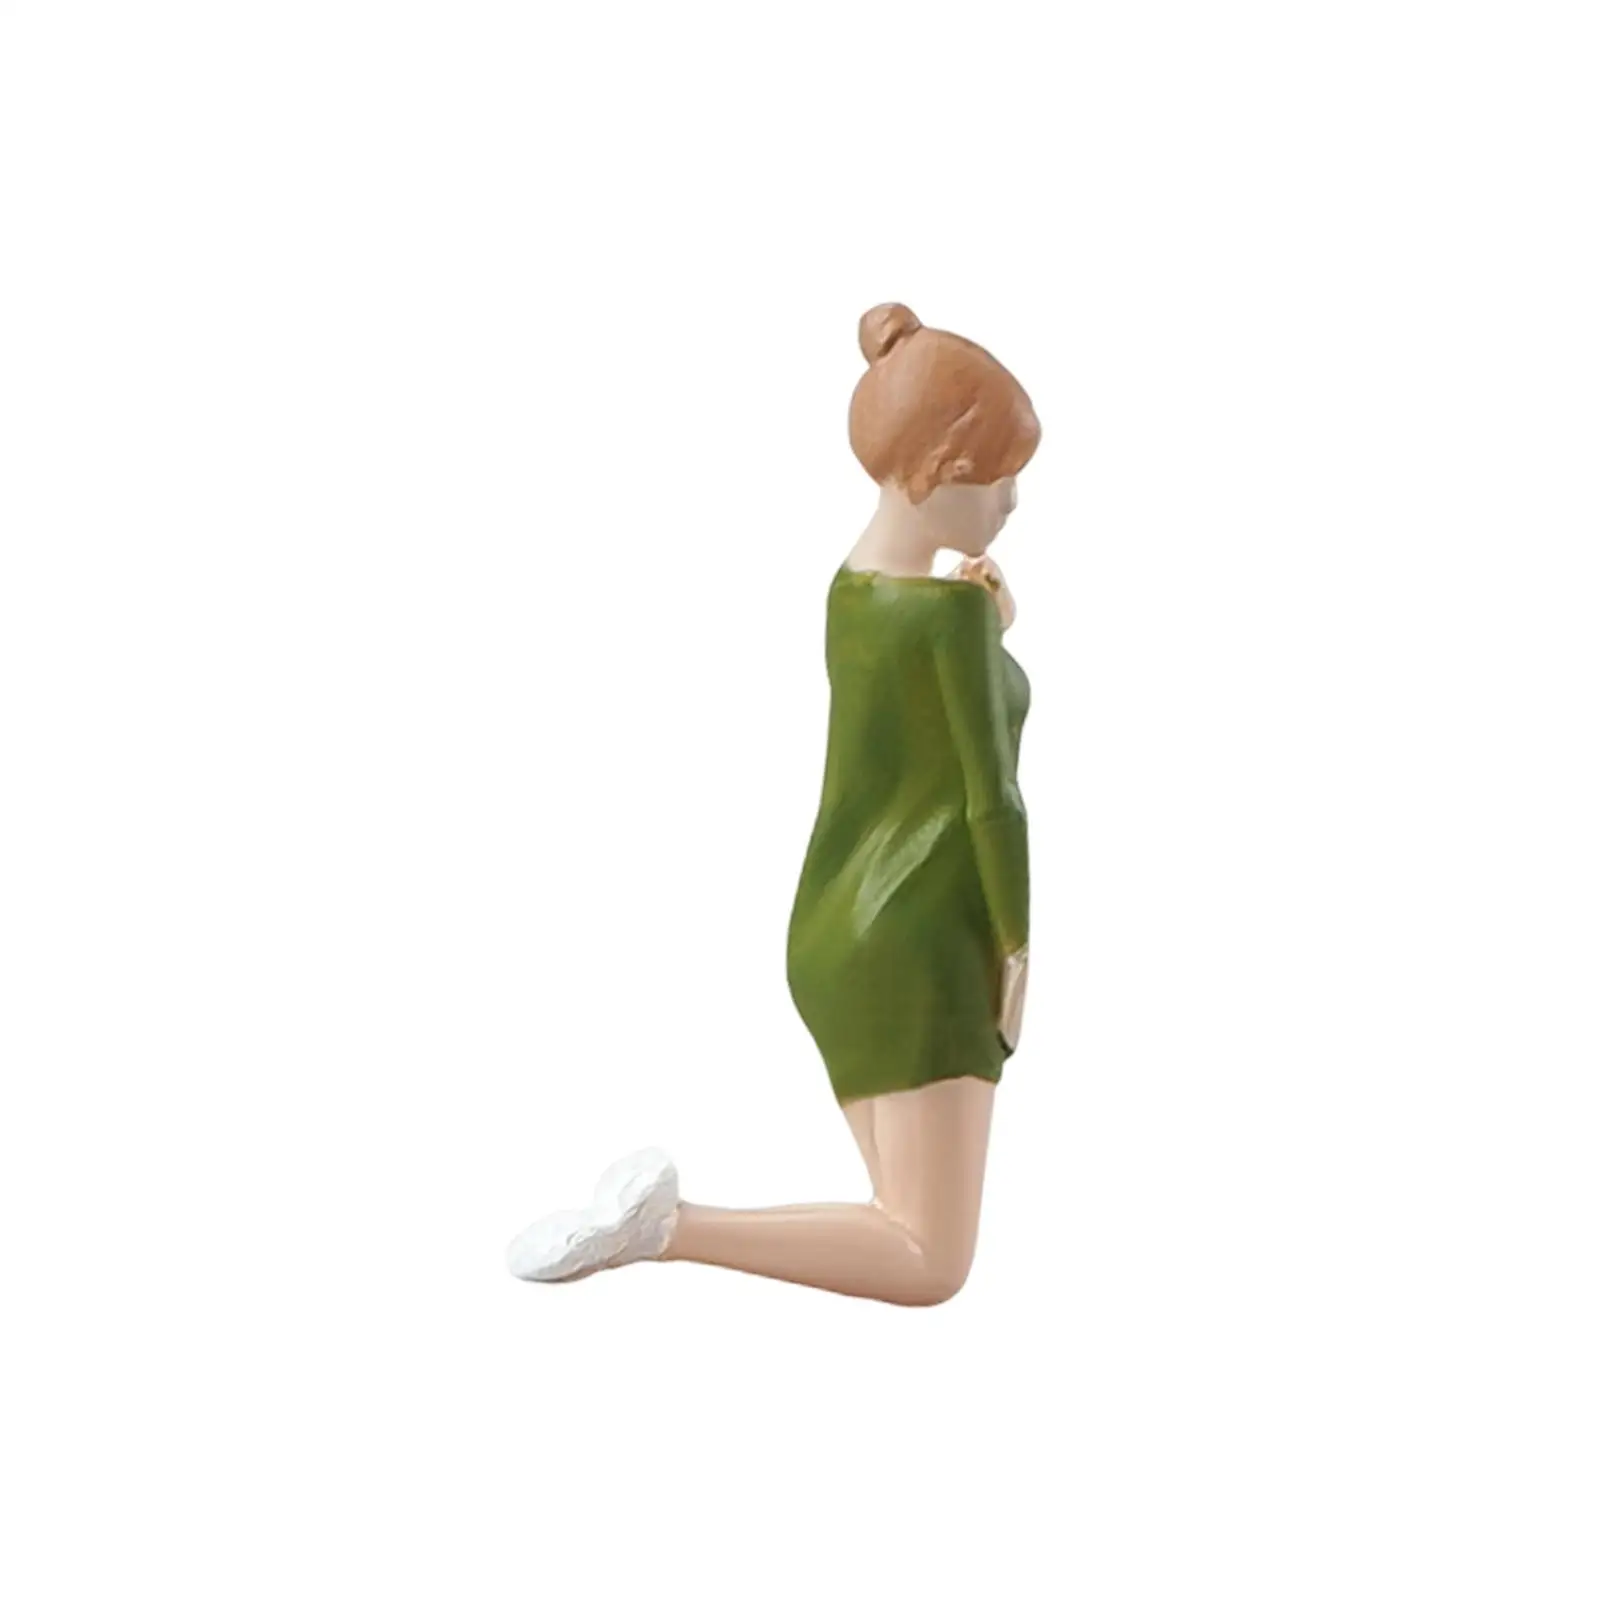 1/64 Scale People Figures Mini People Figurines for Diorama Miniature Scene